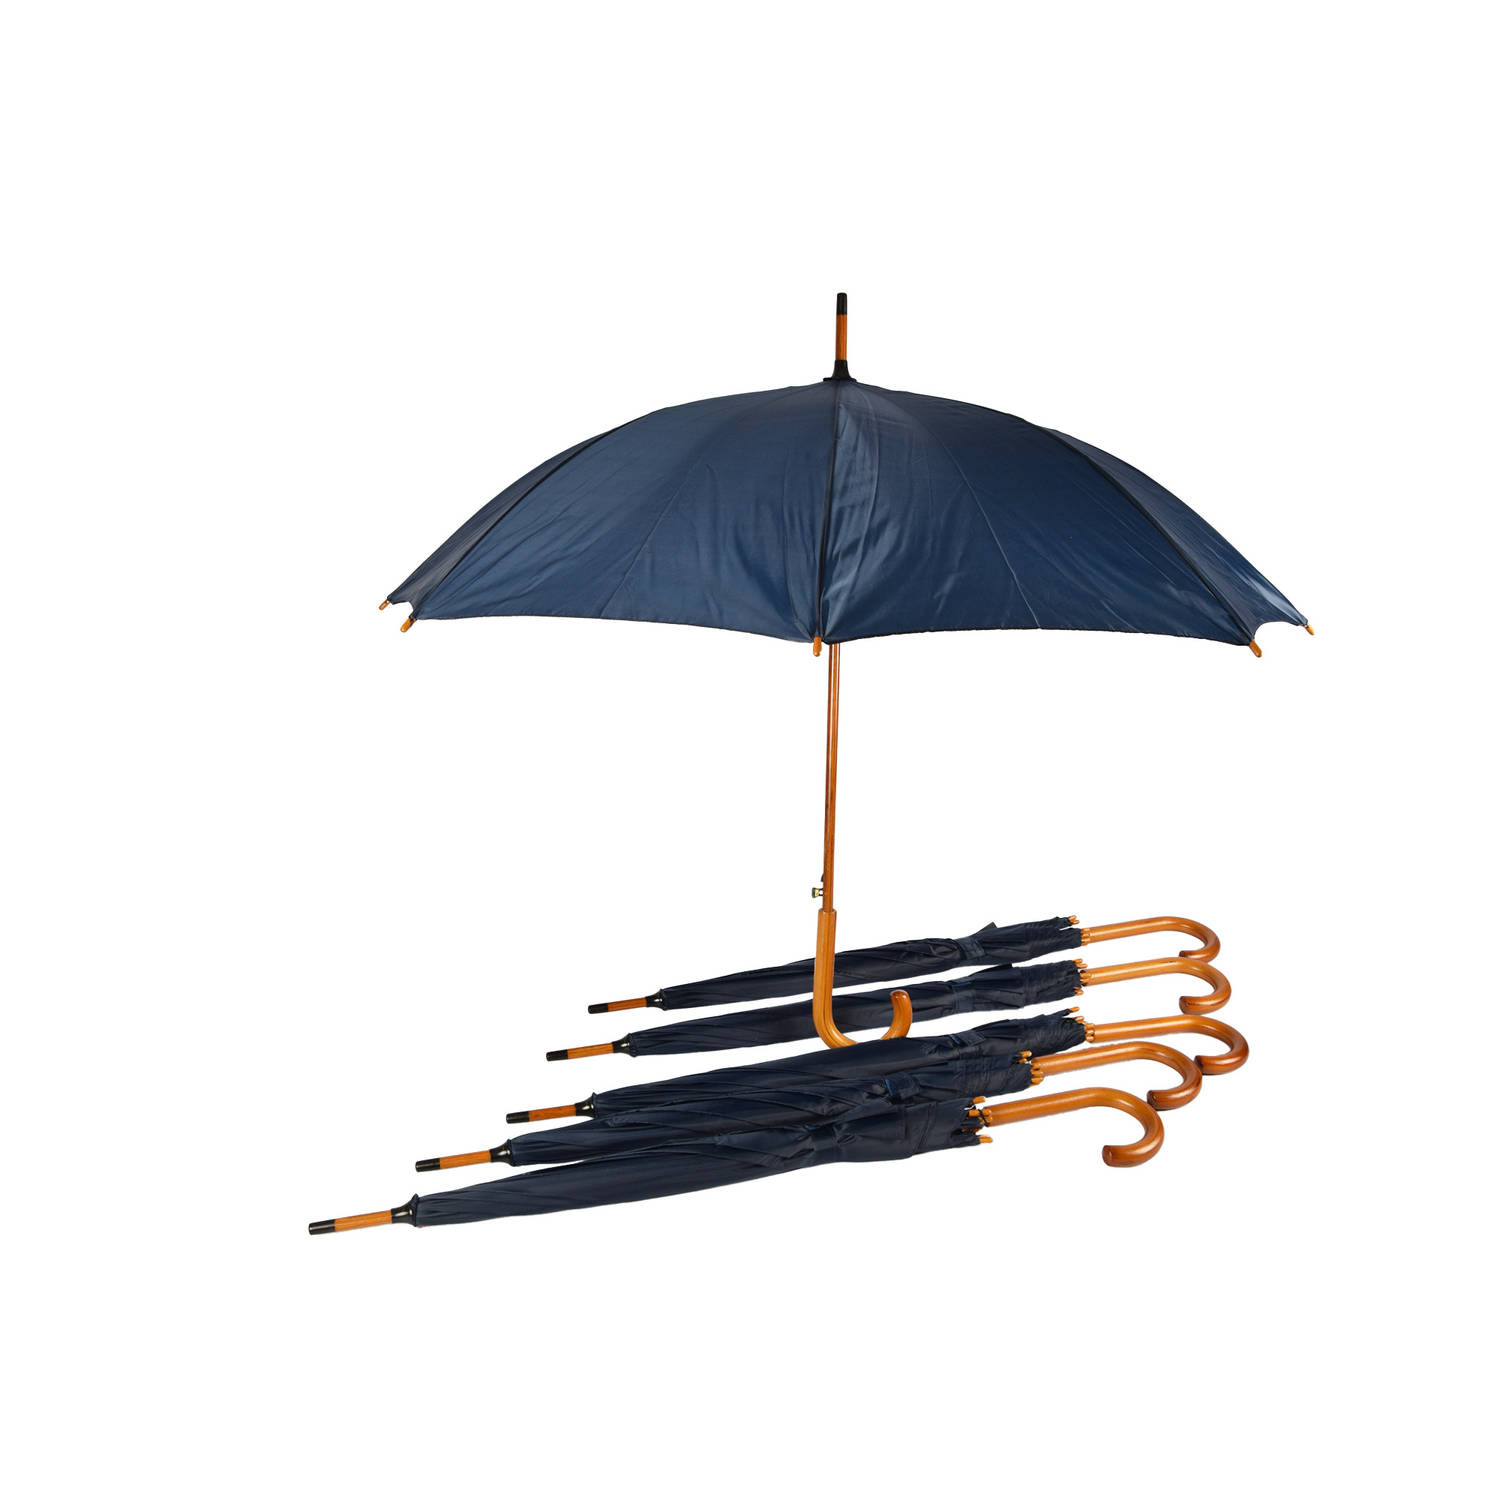 Set van 6 Navy Blauwe Automatische Paraplu’s met Houten Handvat | Waterdicht en Windproof | 98cm Diameter | Je Kunt Hem ook als Golfparaplu Gebruiken